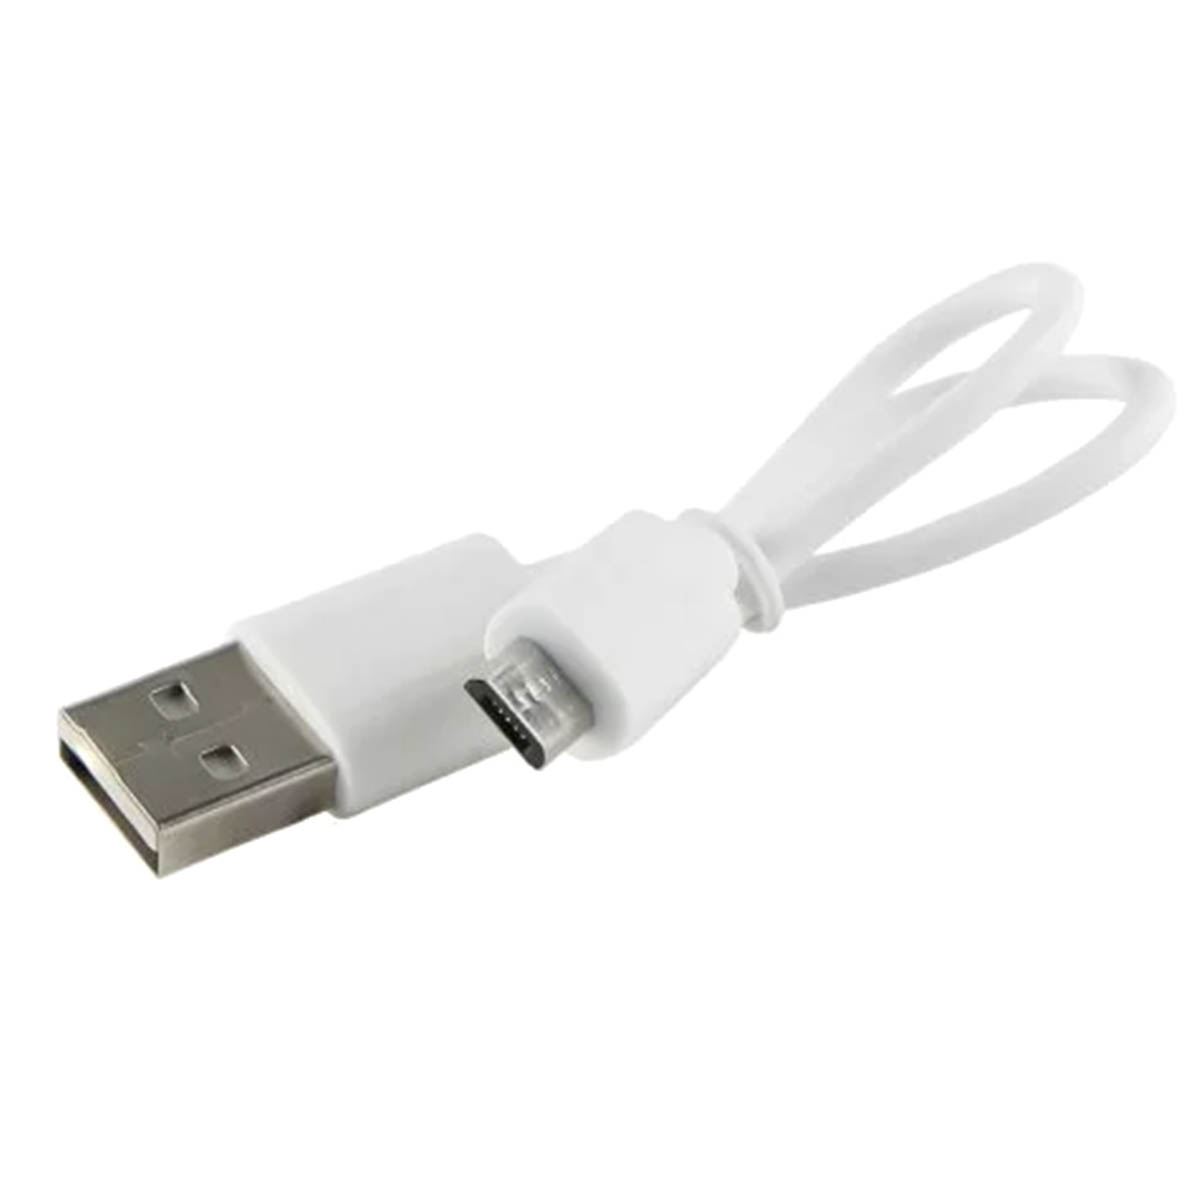 USB кабель BUDI для micro USB модель M8J011M20-WHT, длина 20 cм, цвет белый